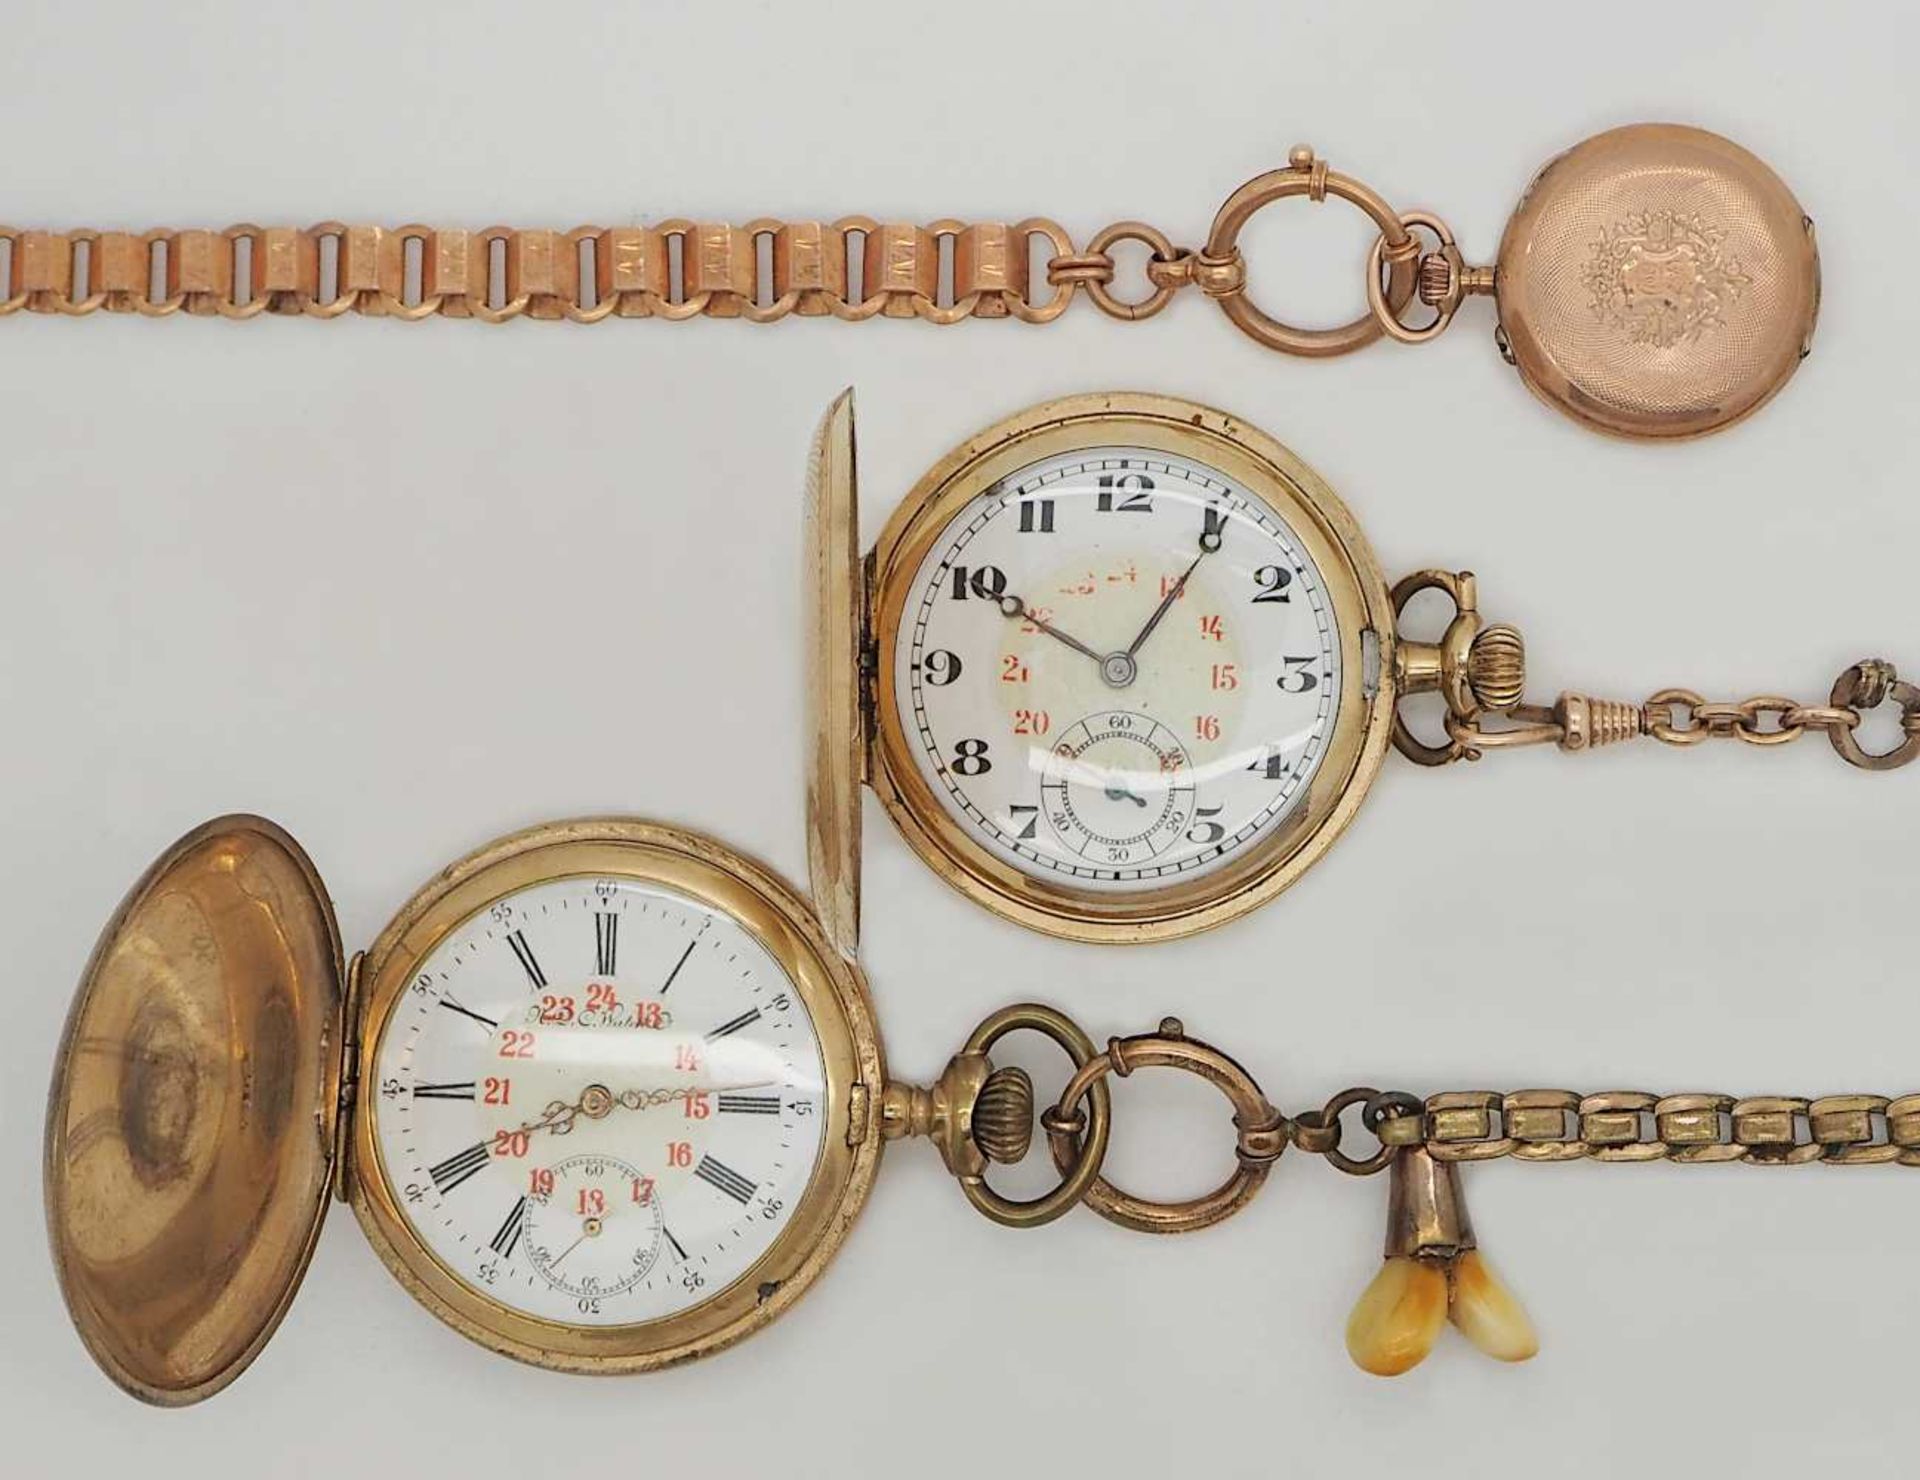 2 Herrentaschenuhren sowie 1 Damentaschenuhr je verg. je um 1900 sowie 2 Uhrenketten verg. 1 Uhr - Image 2 of 2